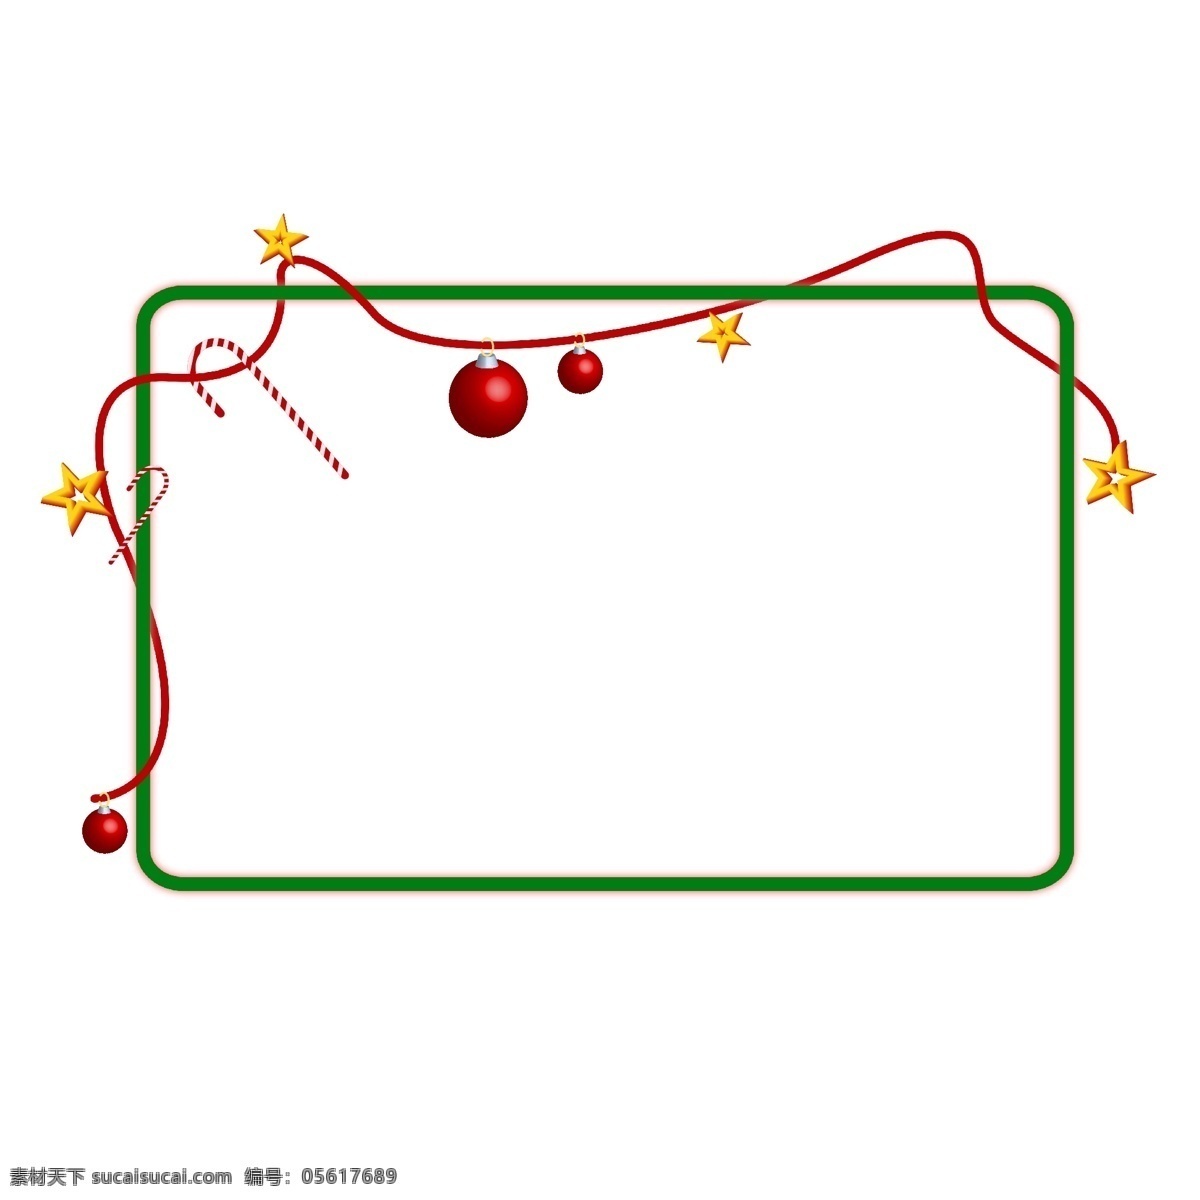 圣诞节 立体 卡通 边框 铃铛 星星 礼物 立体边框 圣诞夜 圣诞礼物 欢乐 卡通相框 手绘边框